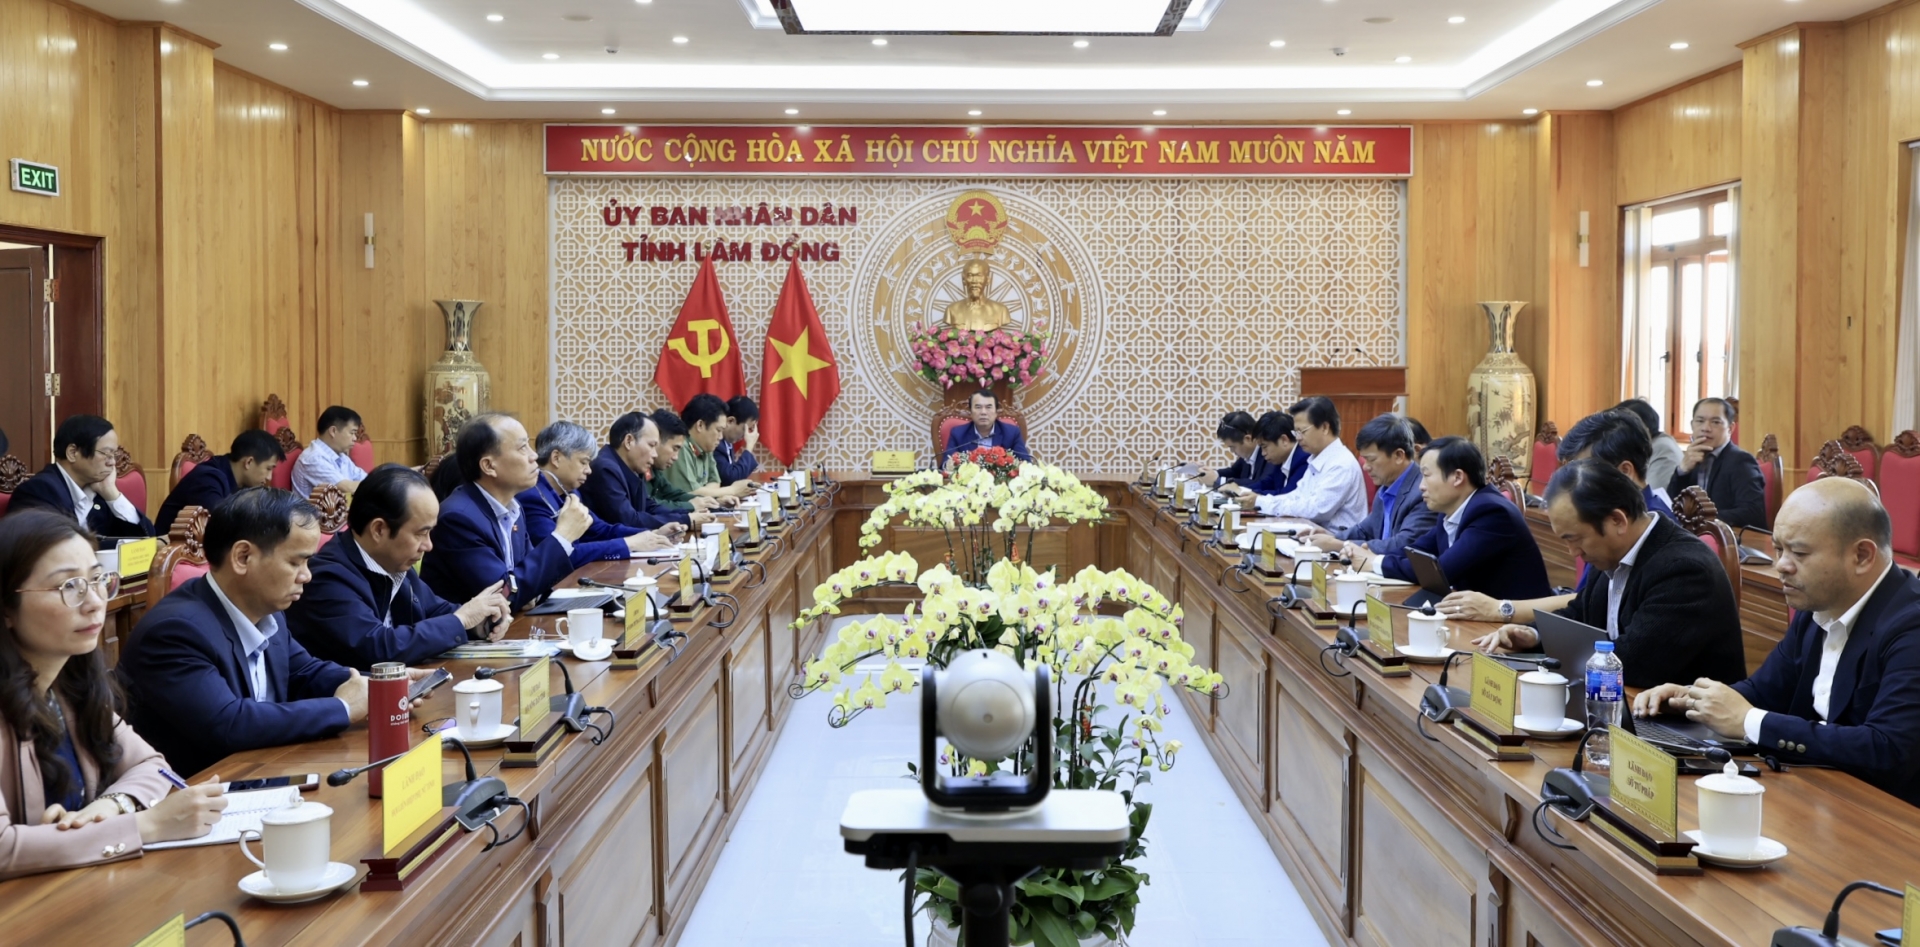 Các đại biểu tỉnh Lâm Đồng tham dự Phiên họp thứ 5 của Ban Chỉ đạo Trung ương các Chương trình mục tiêu quốc gia